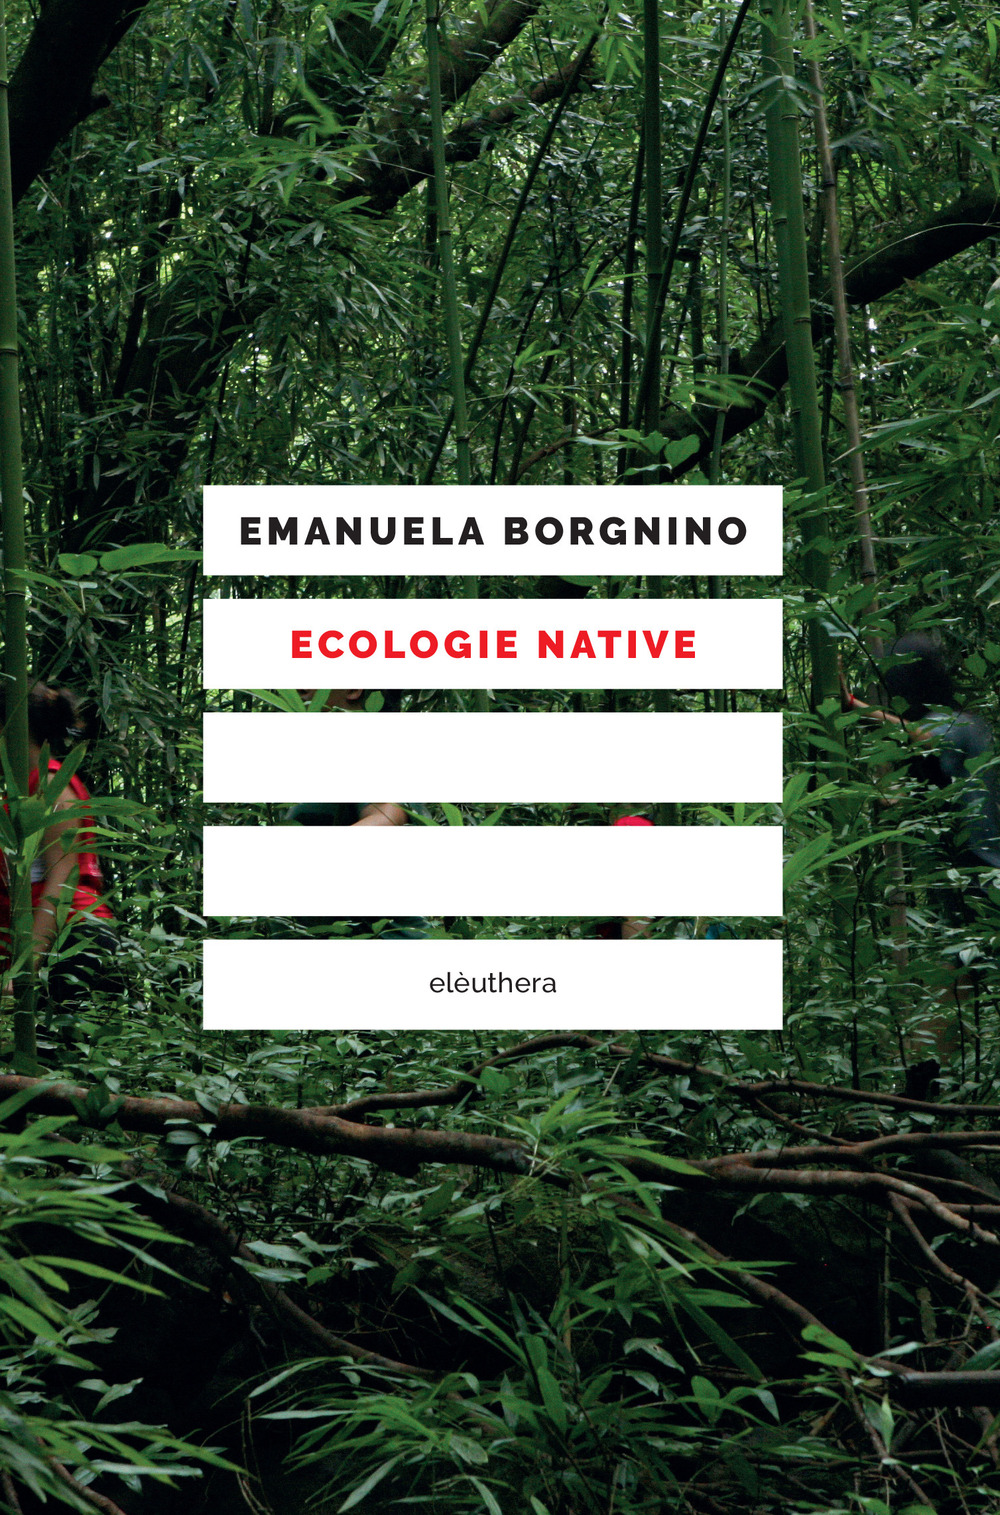 Libri Emanuela Borgnino - Ecologie Native NUOVO SIGILLATO, EDIZIONE DEL 10/03/2022 SUBITO DISPONIBILE